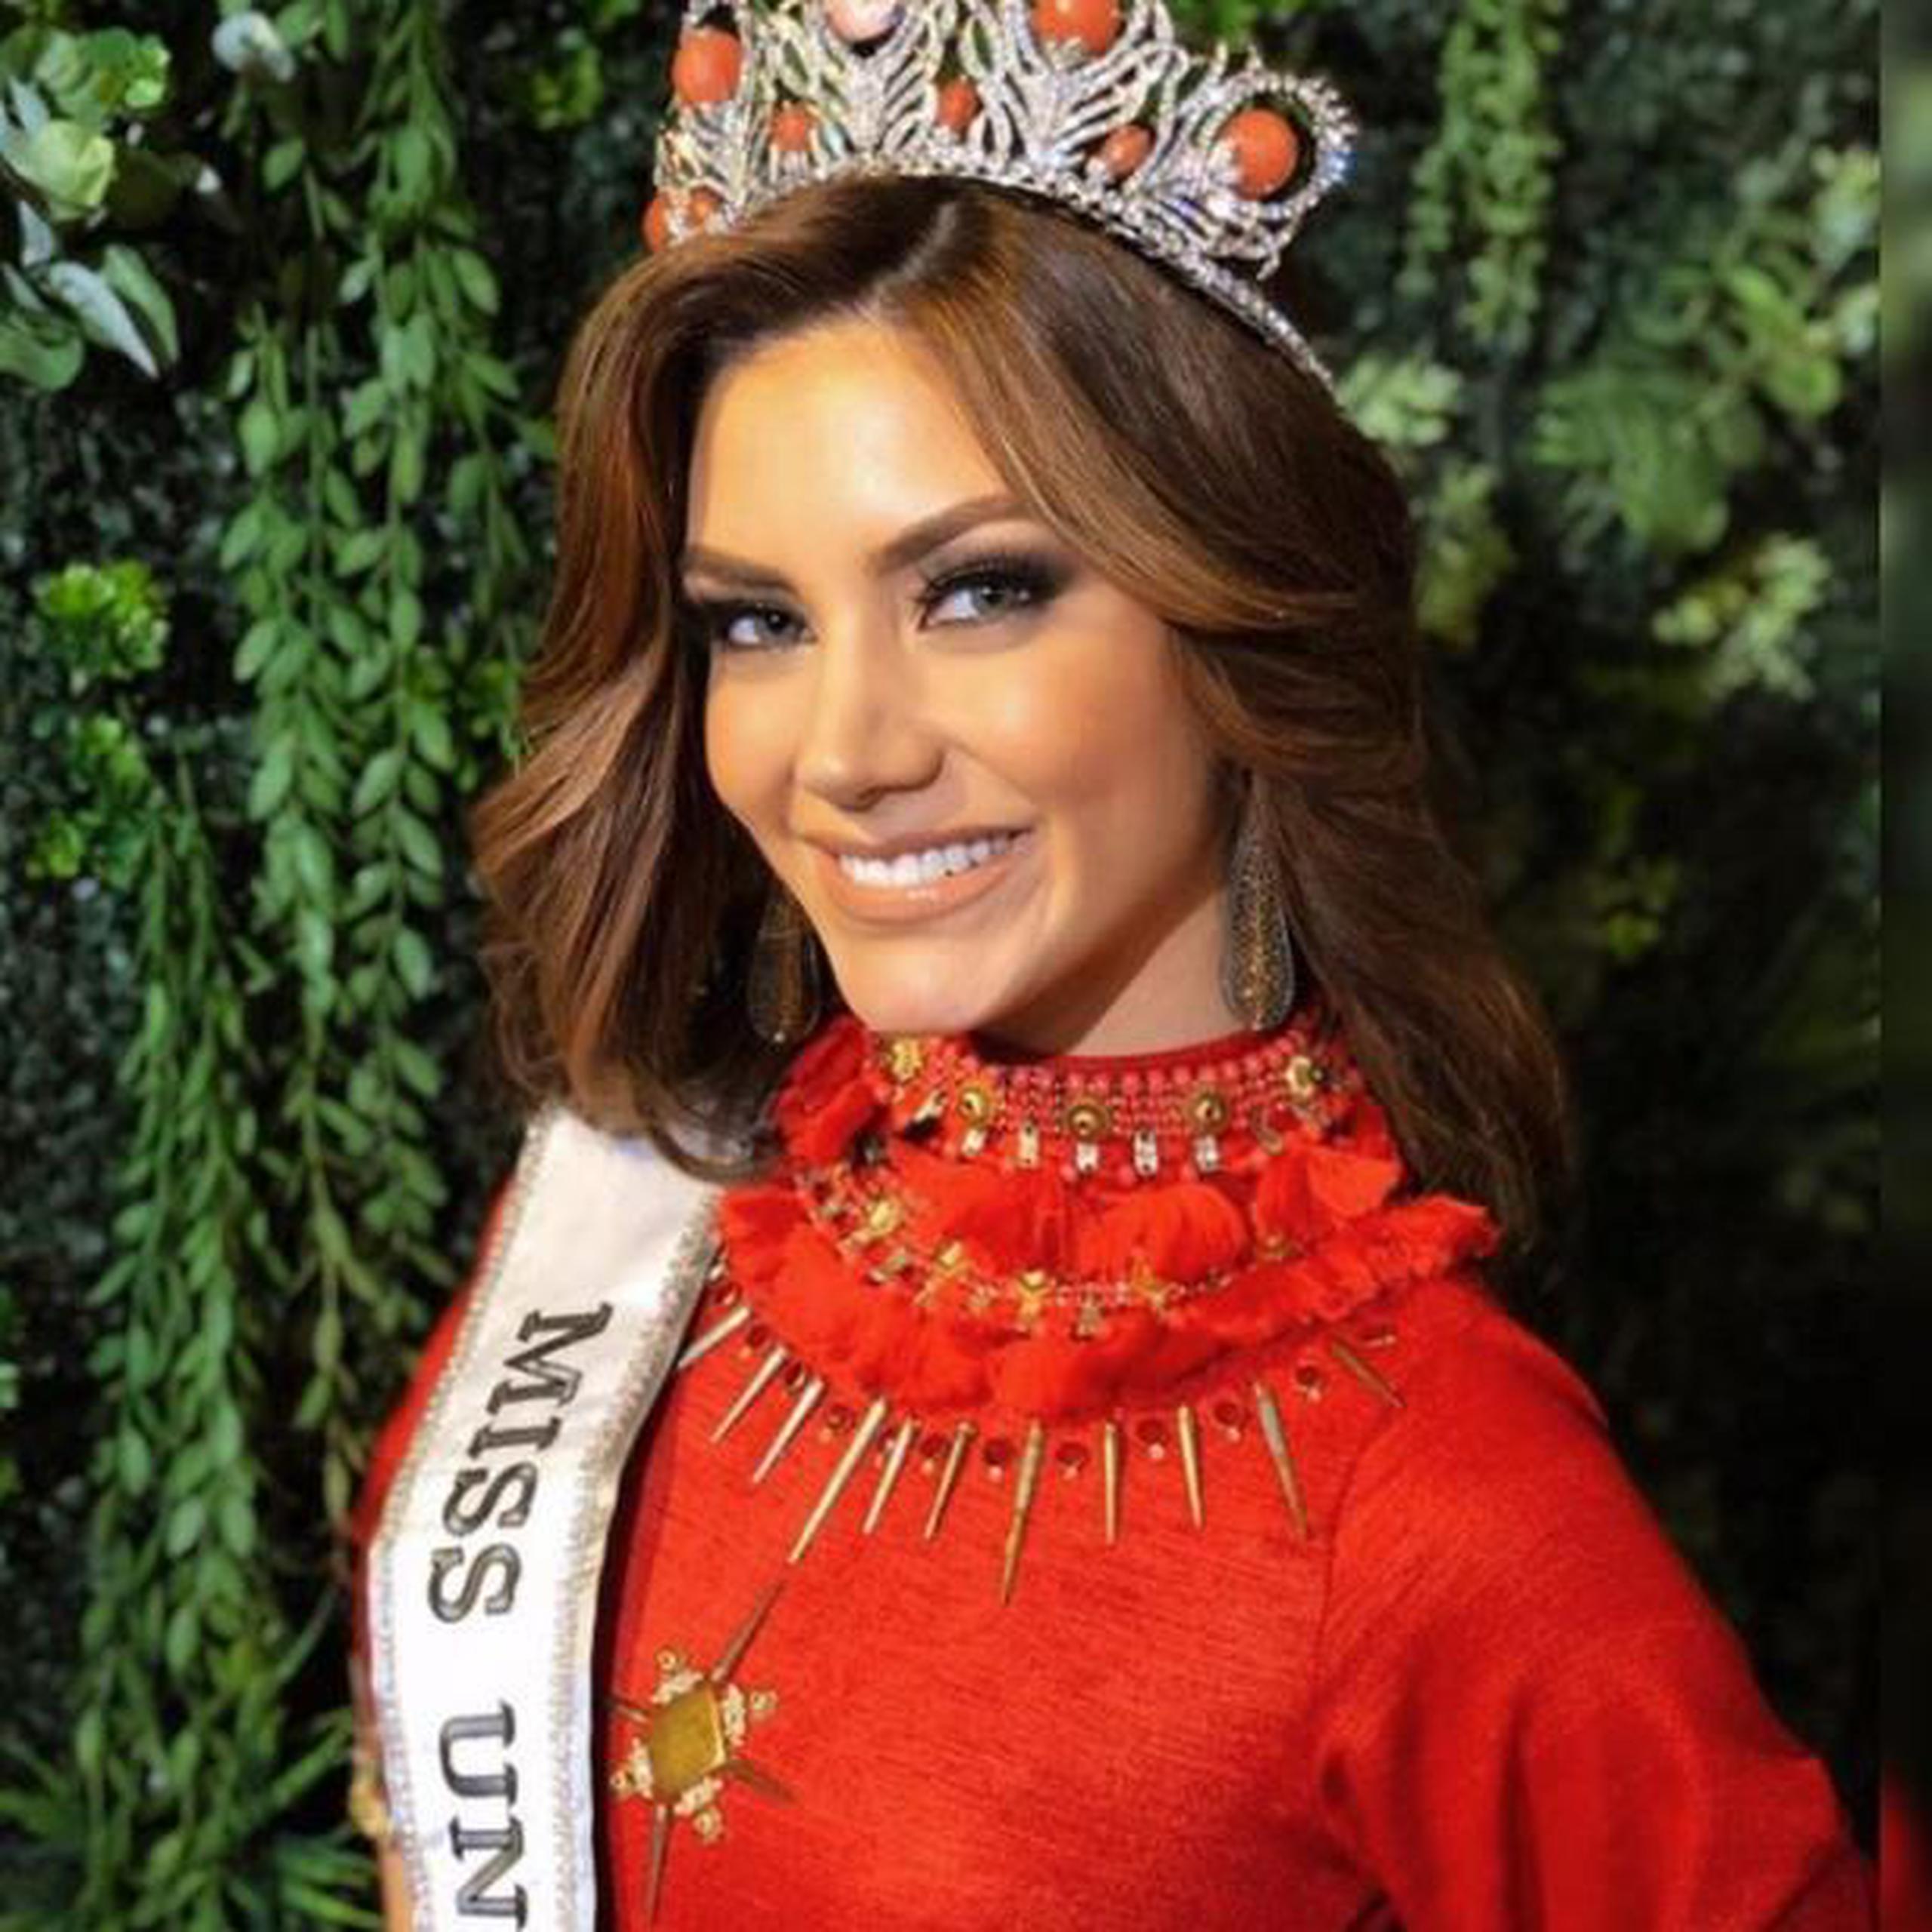 La joven Mariana Varela representa a Argentina en el certamen Miss Universe. (Instagram / @marianajvarela)